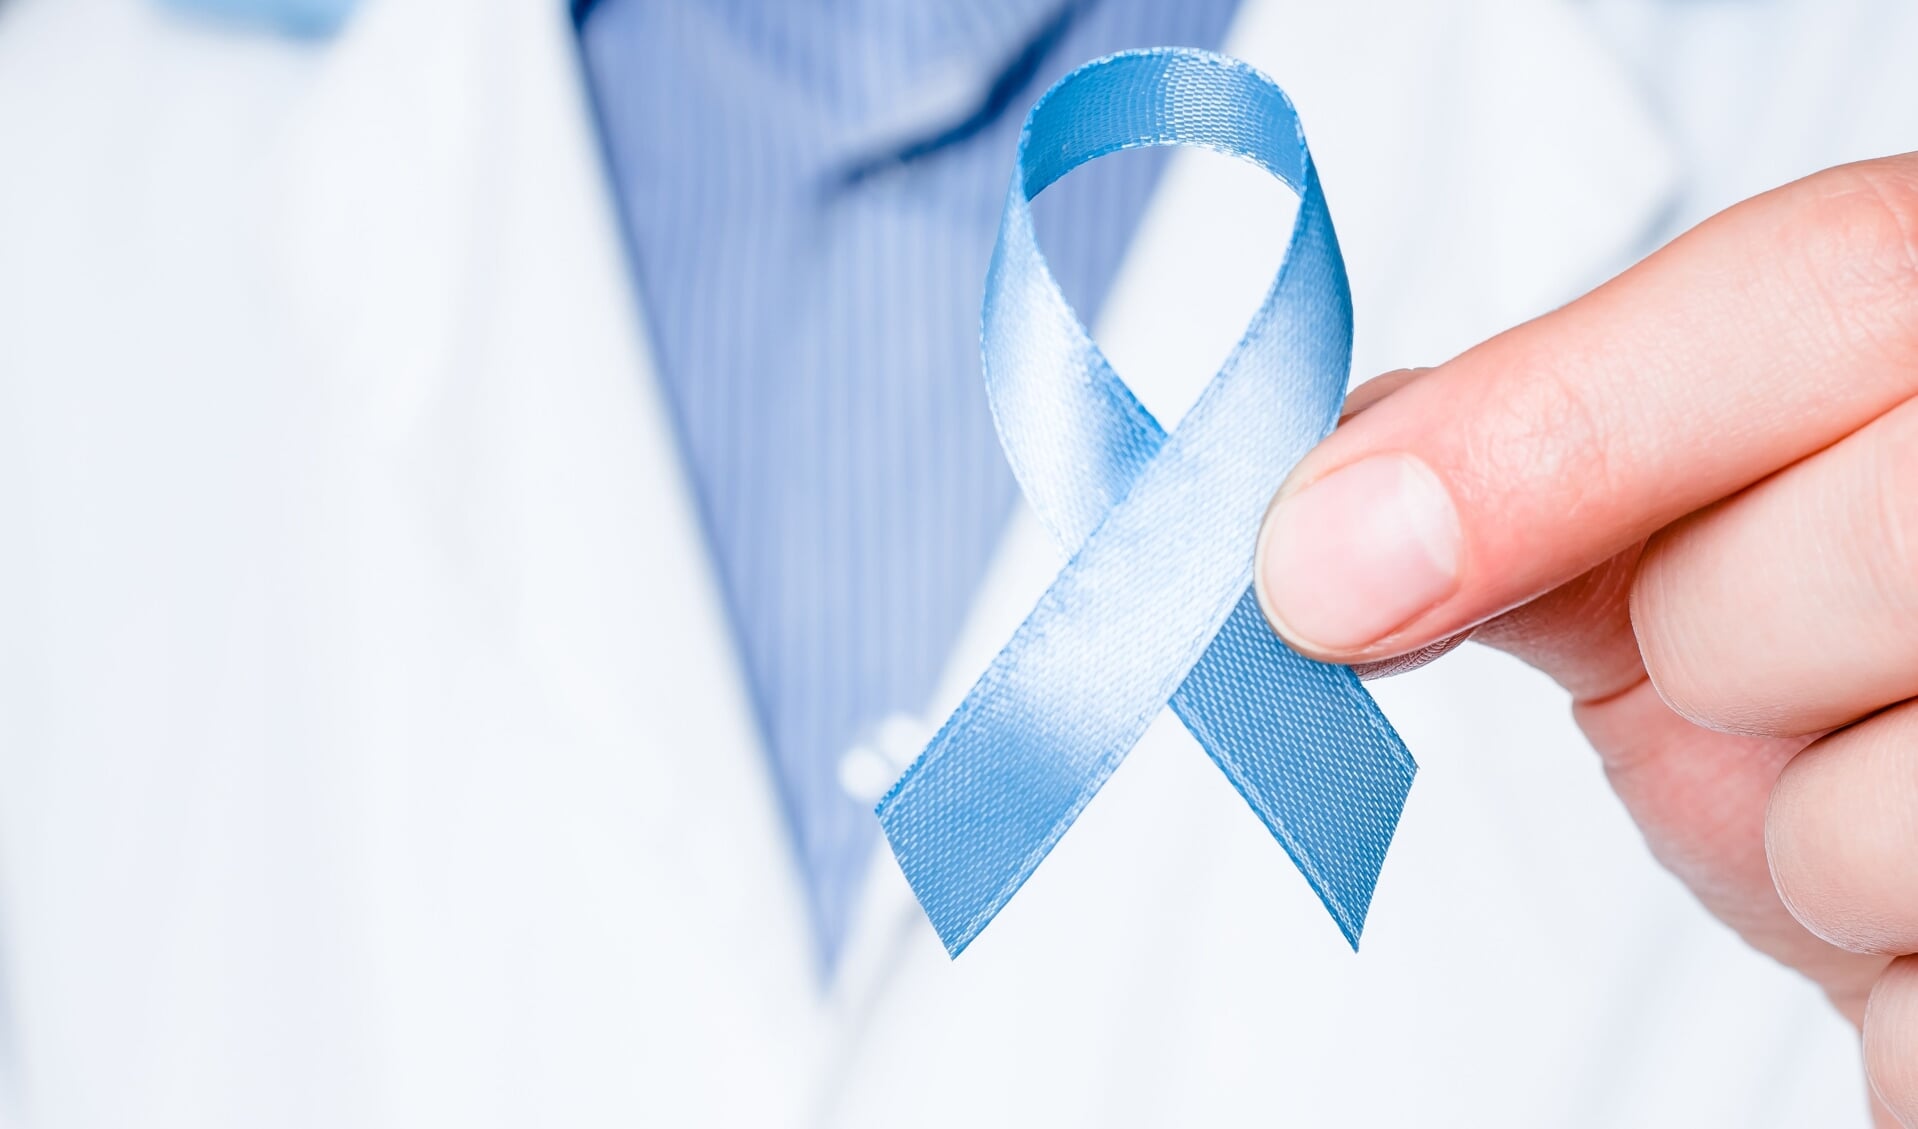 “Prostaatkanker heeft grote impact op het leven van de patiënt."